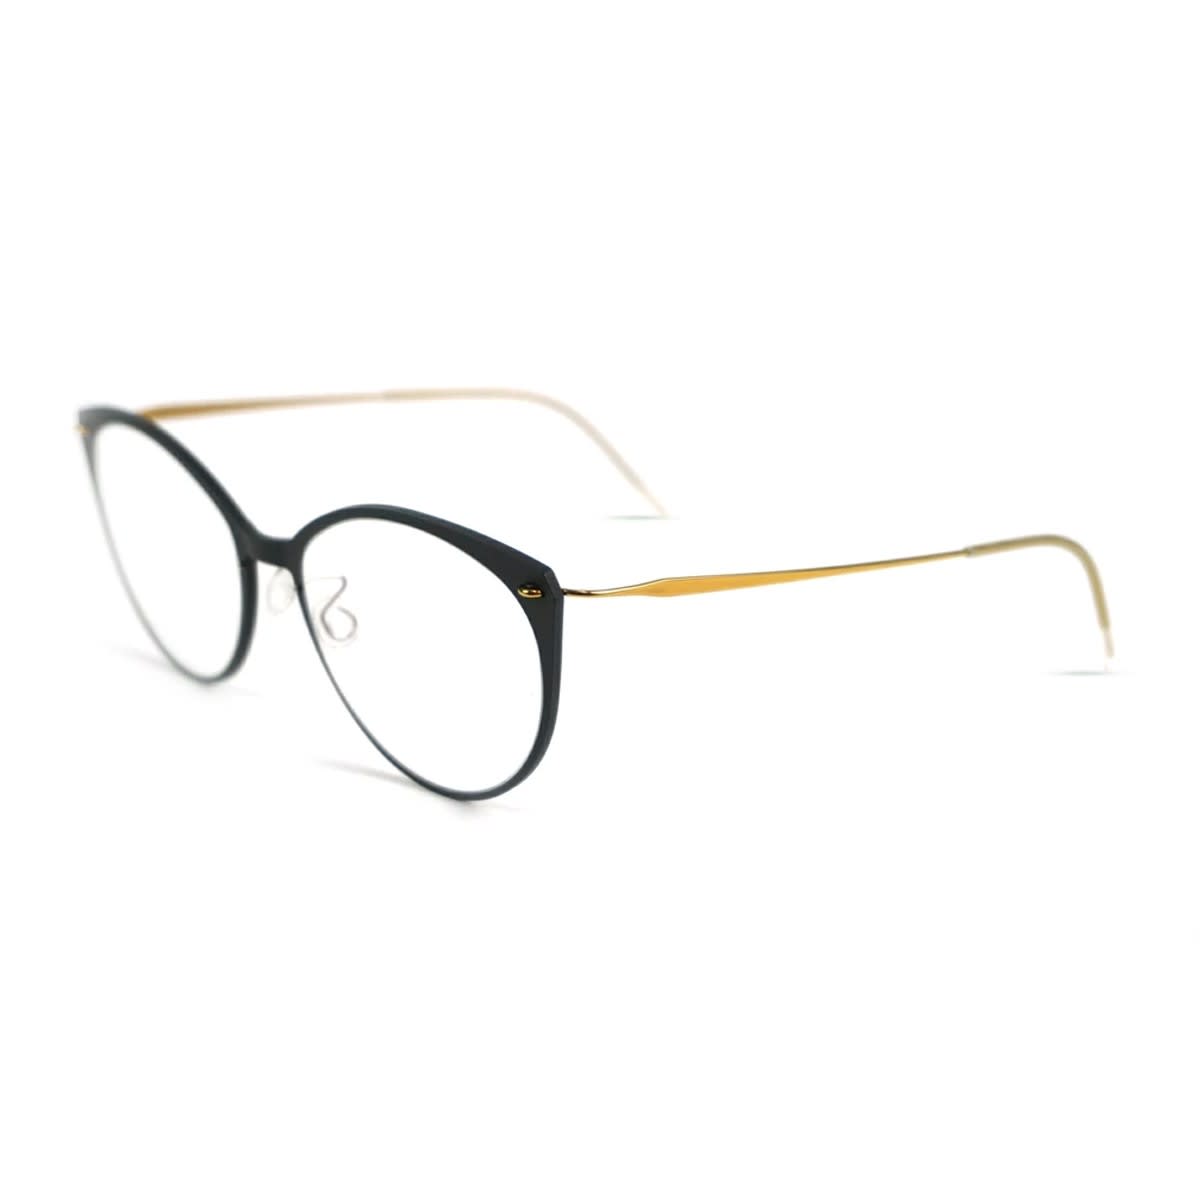 Lindberg N.o.w. 6564 Glasses